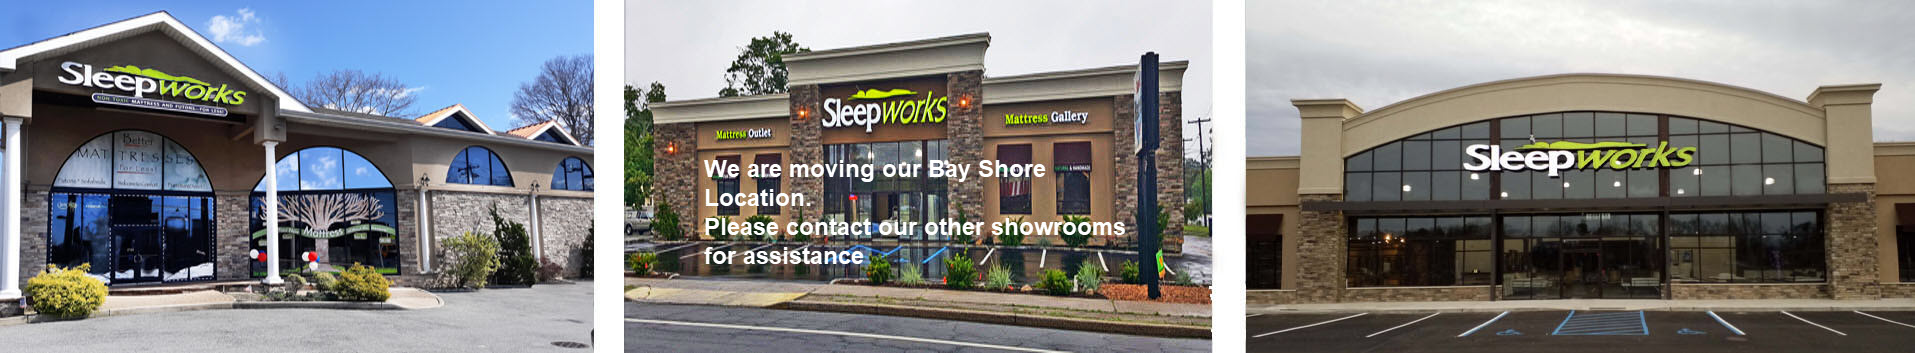 Showrooms sleepworks moving bayshore